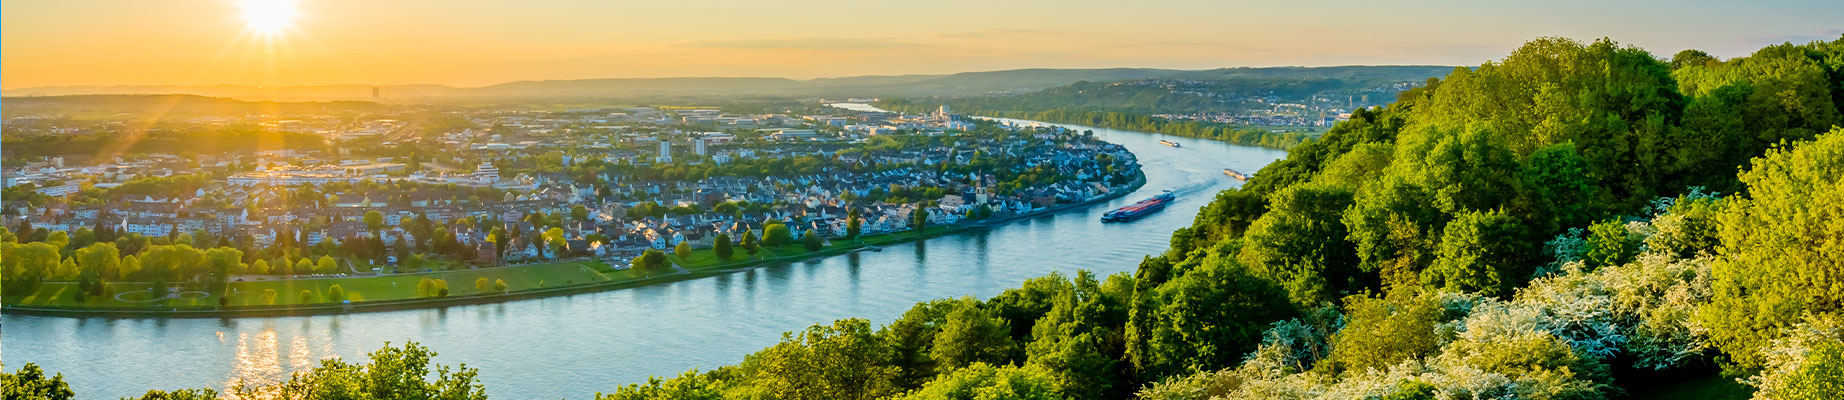 Koblenz an der Mosel